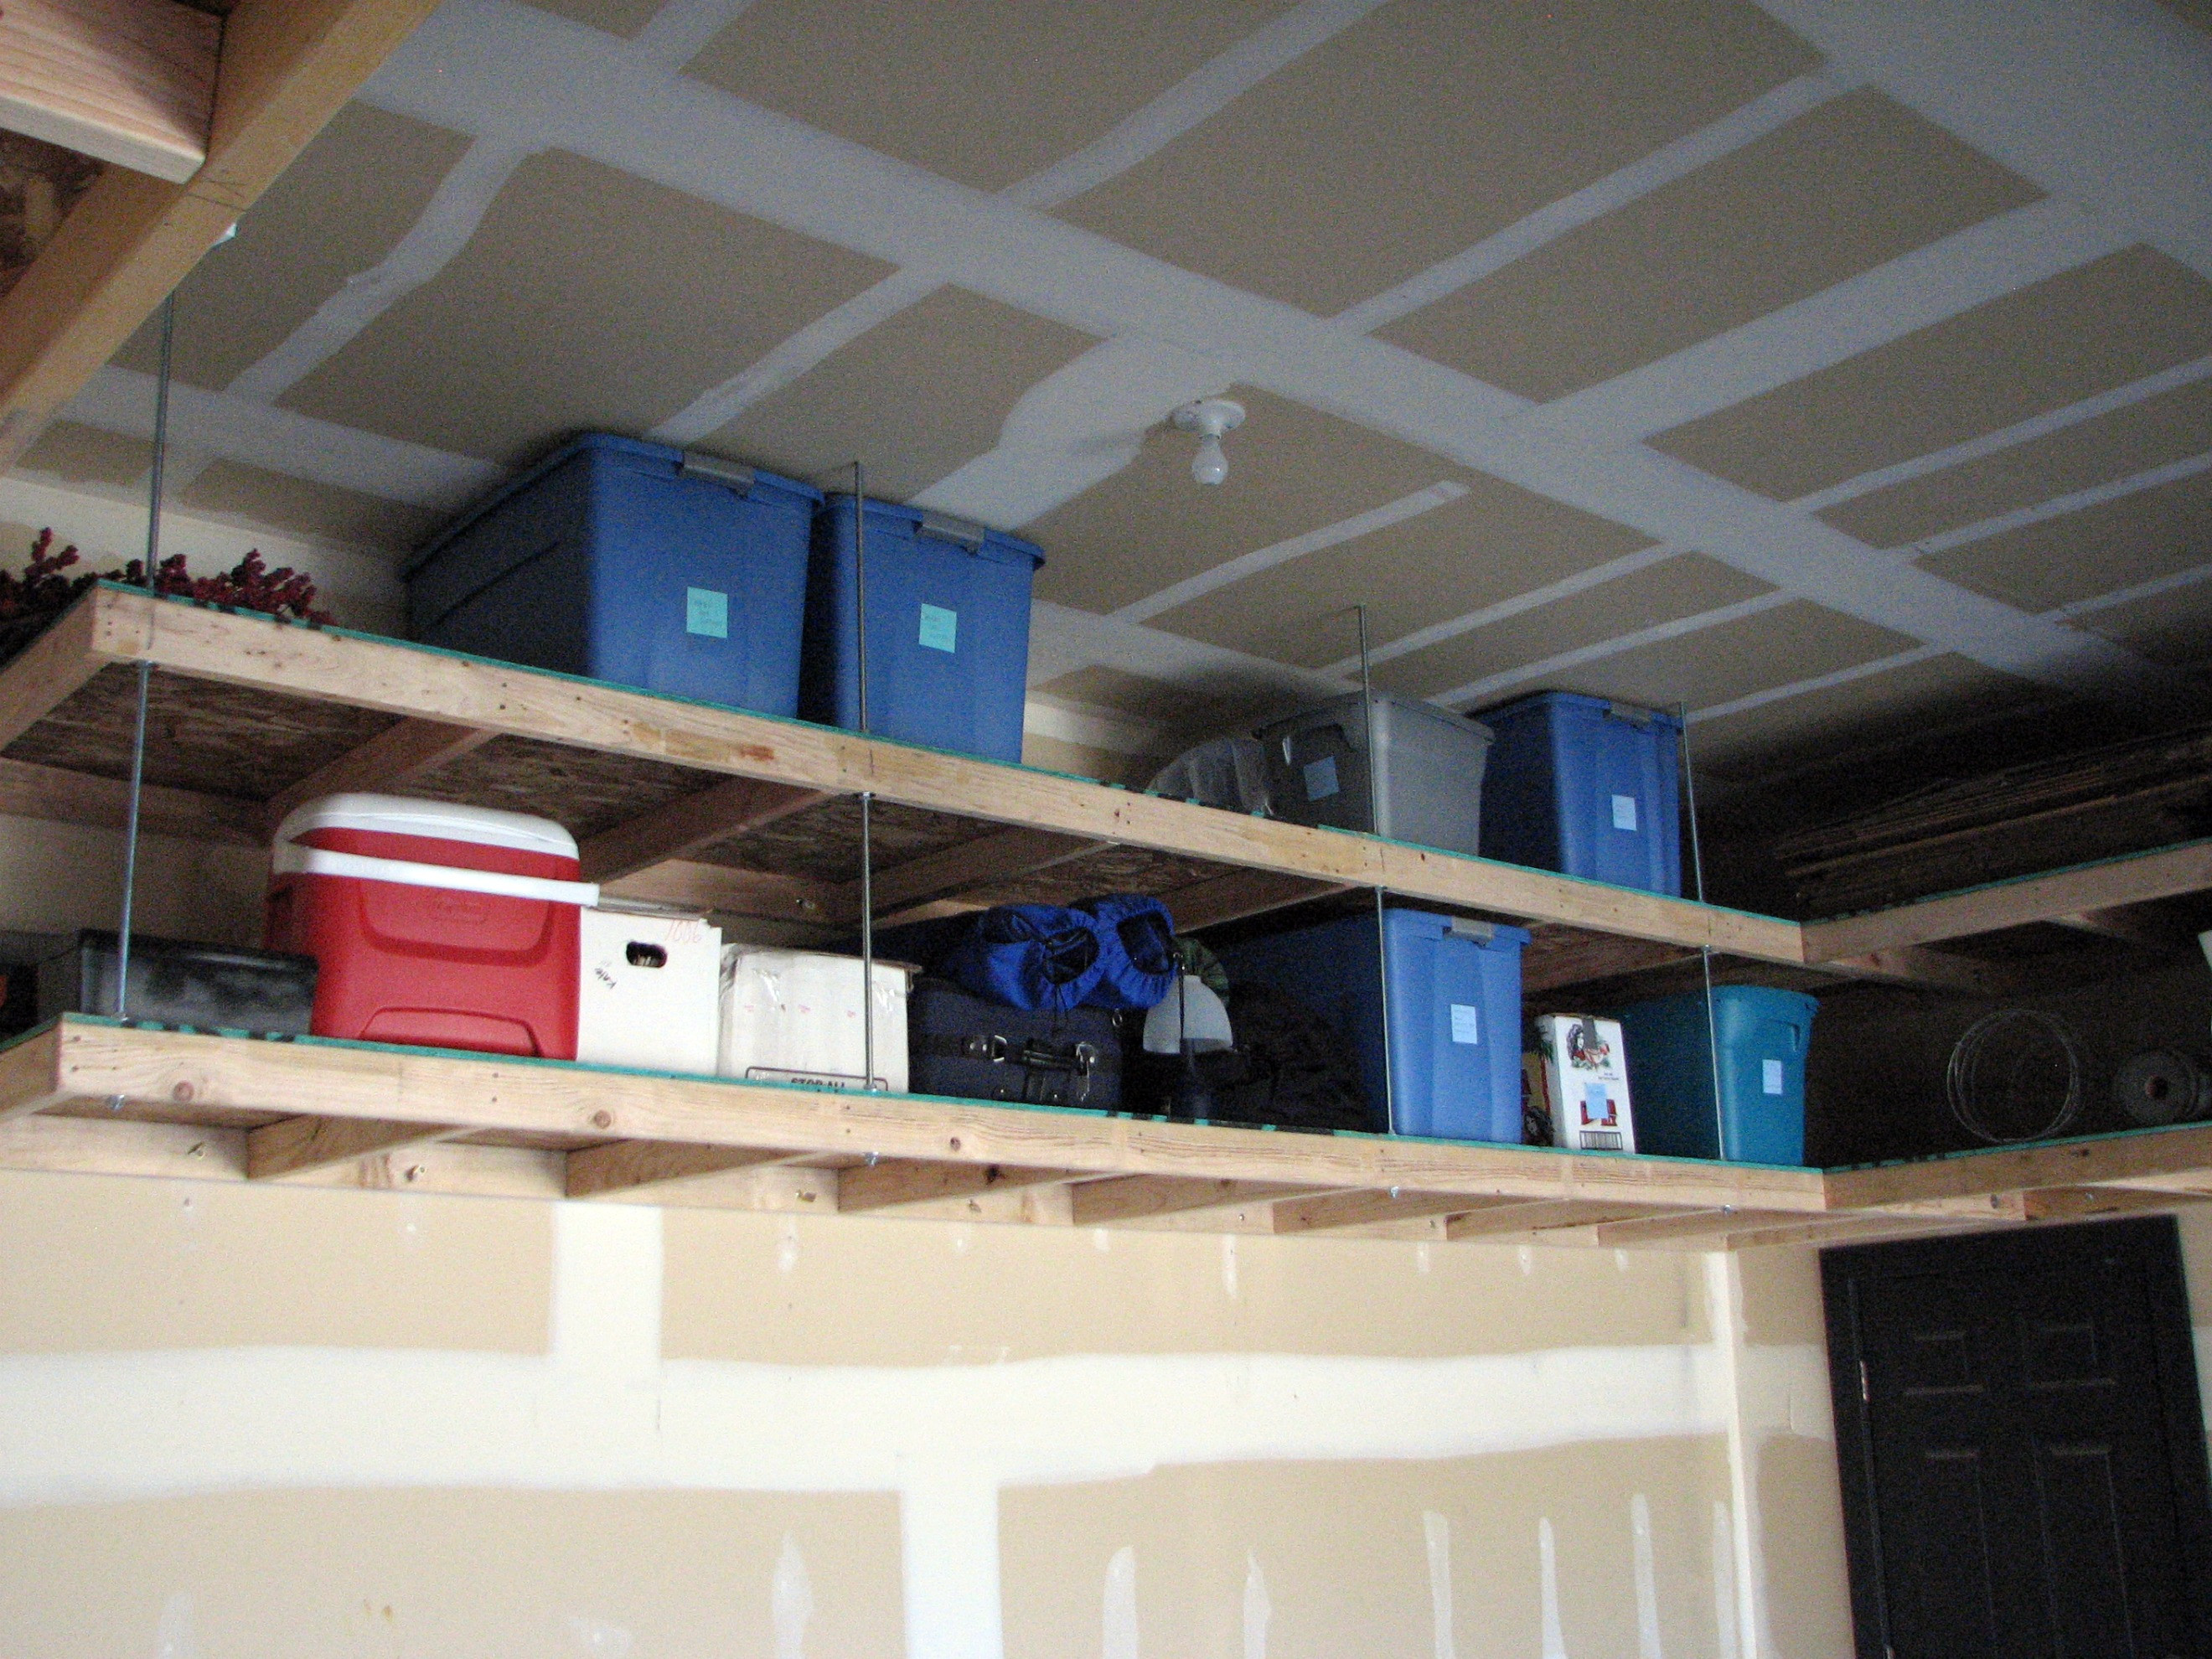 Best ideas about DIY Building An Overhead Garage Storage Shelf
. Save or Pin Genius Garage Organization Hacks Now.